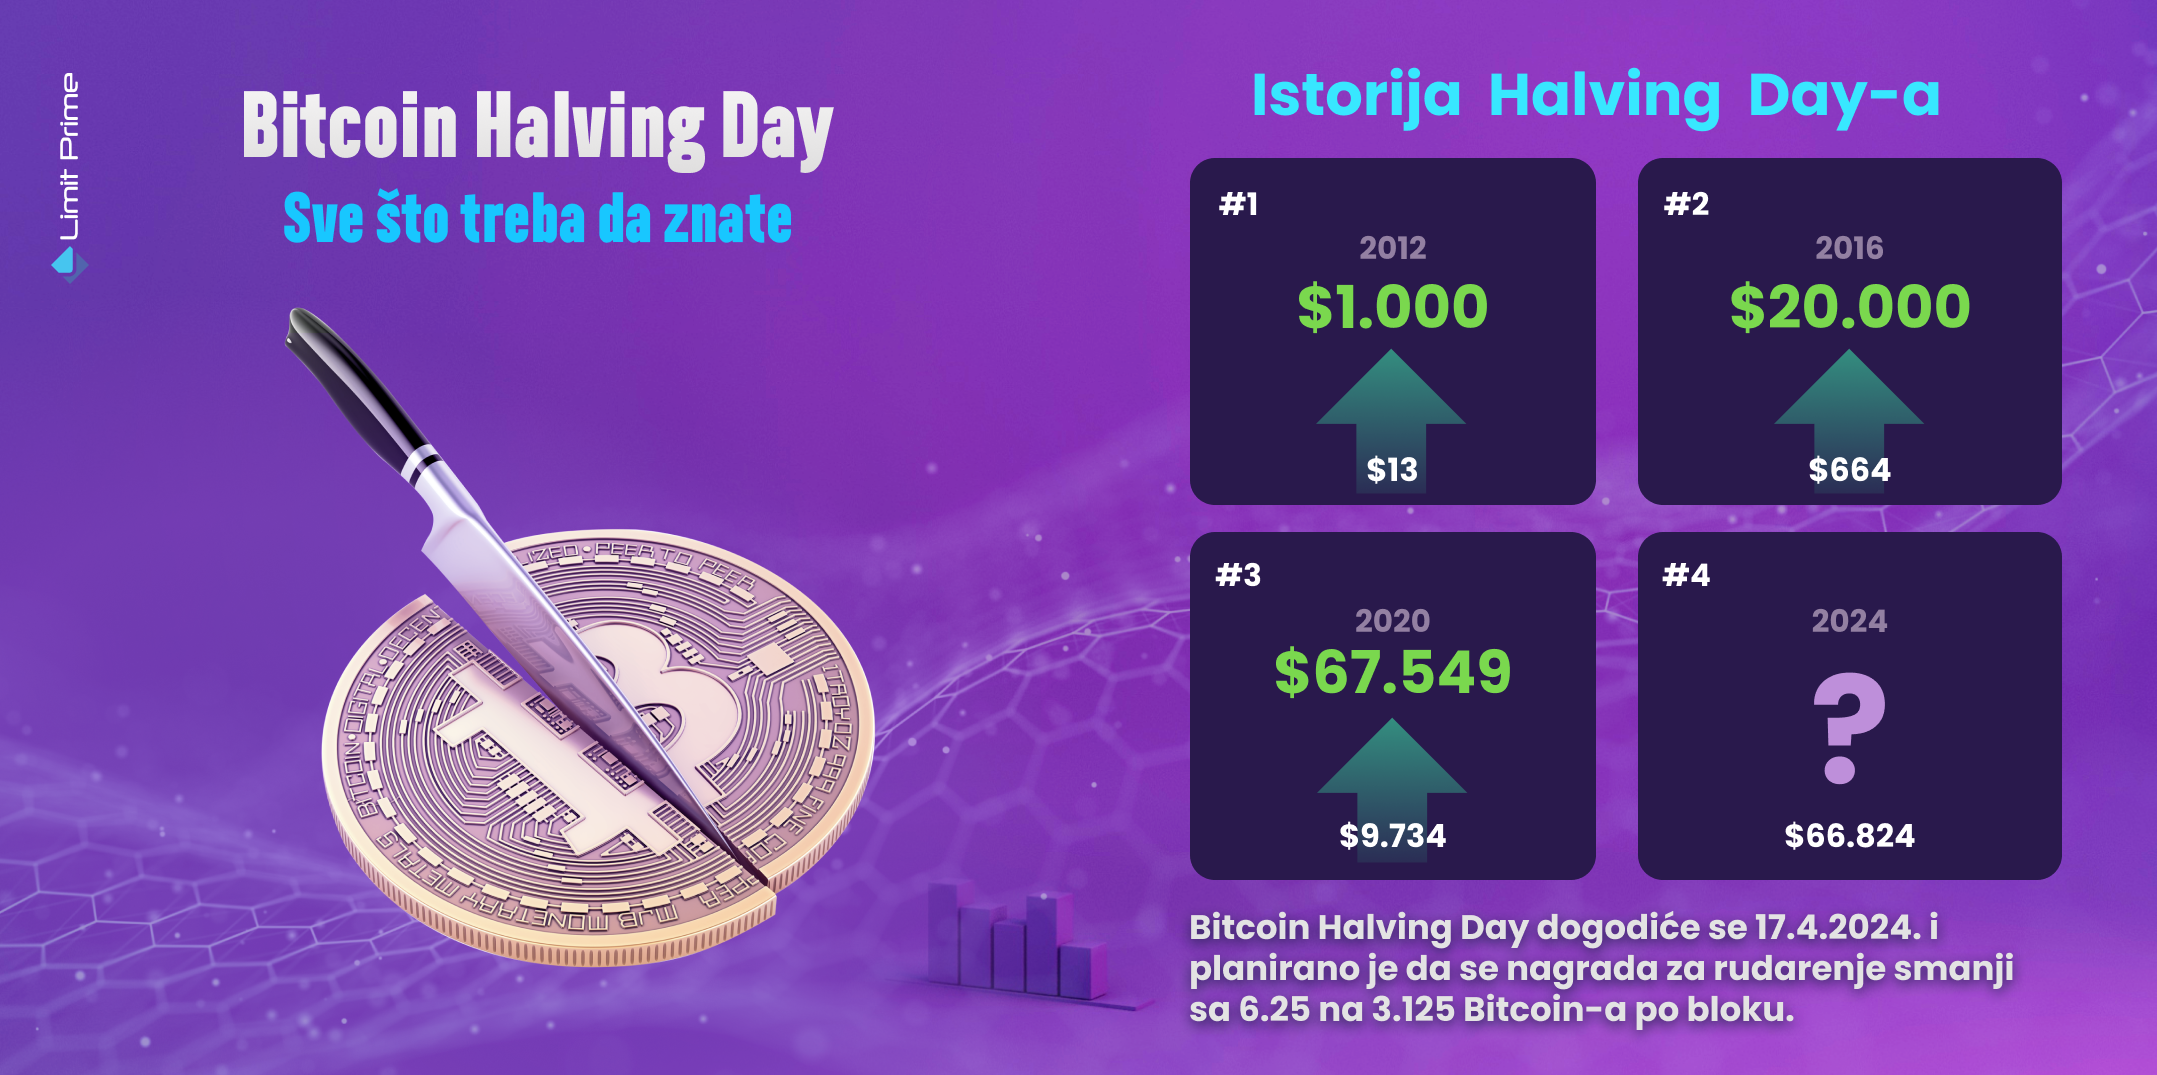 Bitcoin Halving Day: Sve što treba da znate